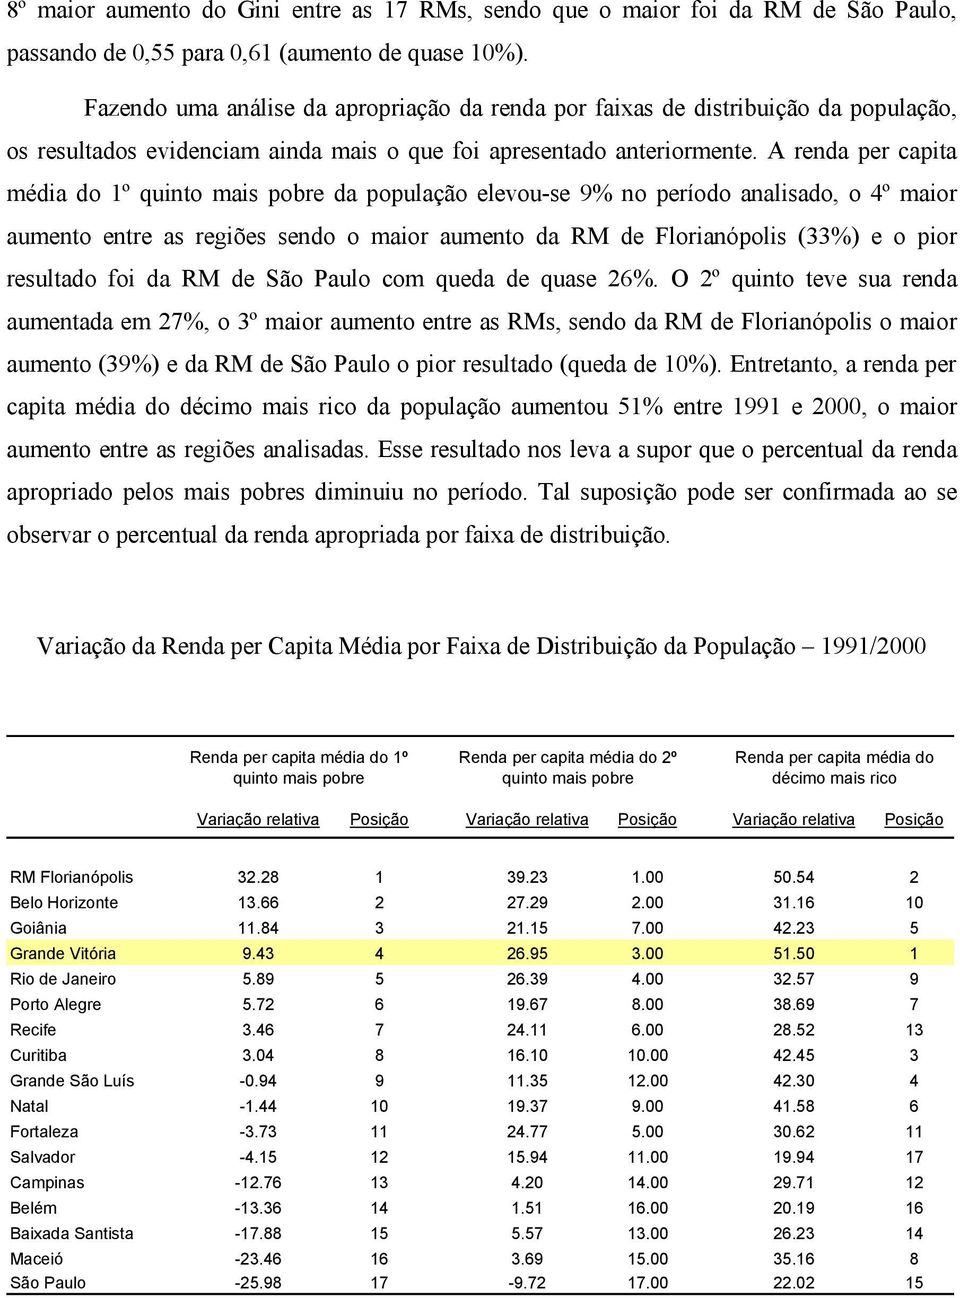 A renda per capita média do 1º quinto mais pobre da população elevou-se 9% no período analisado, o 4º maior aumento entre as regiões sendo o maior aumento da RM de Florianópolis (33%) e o pior